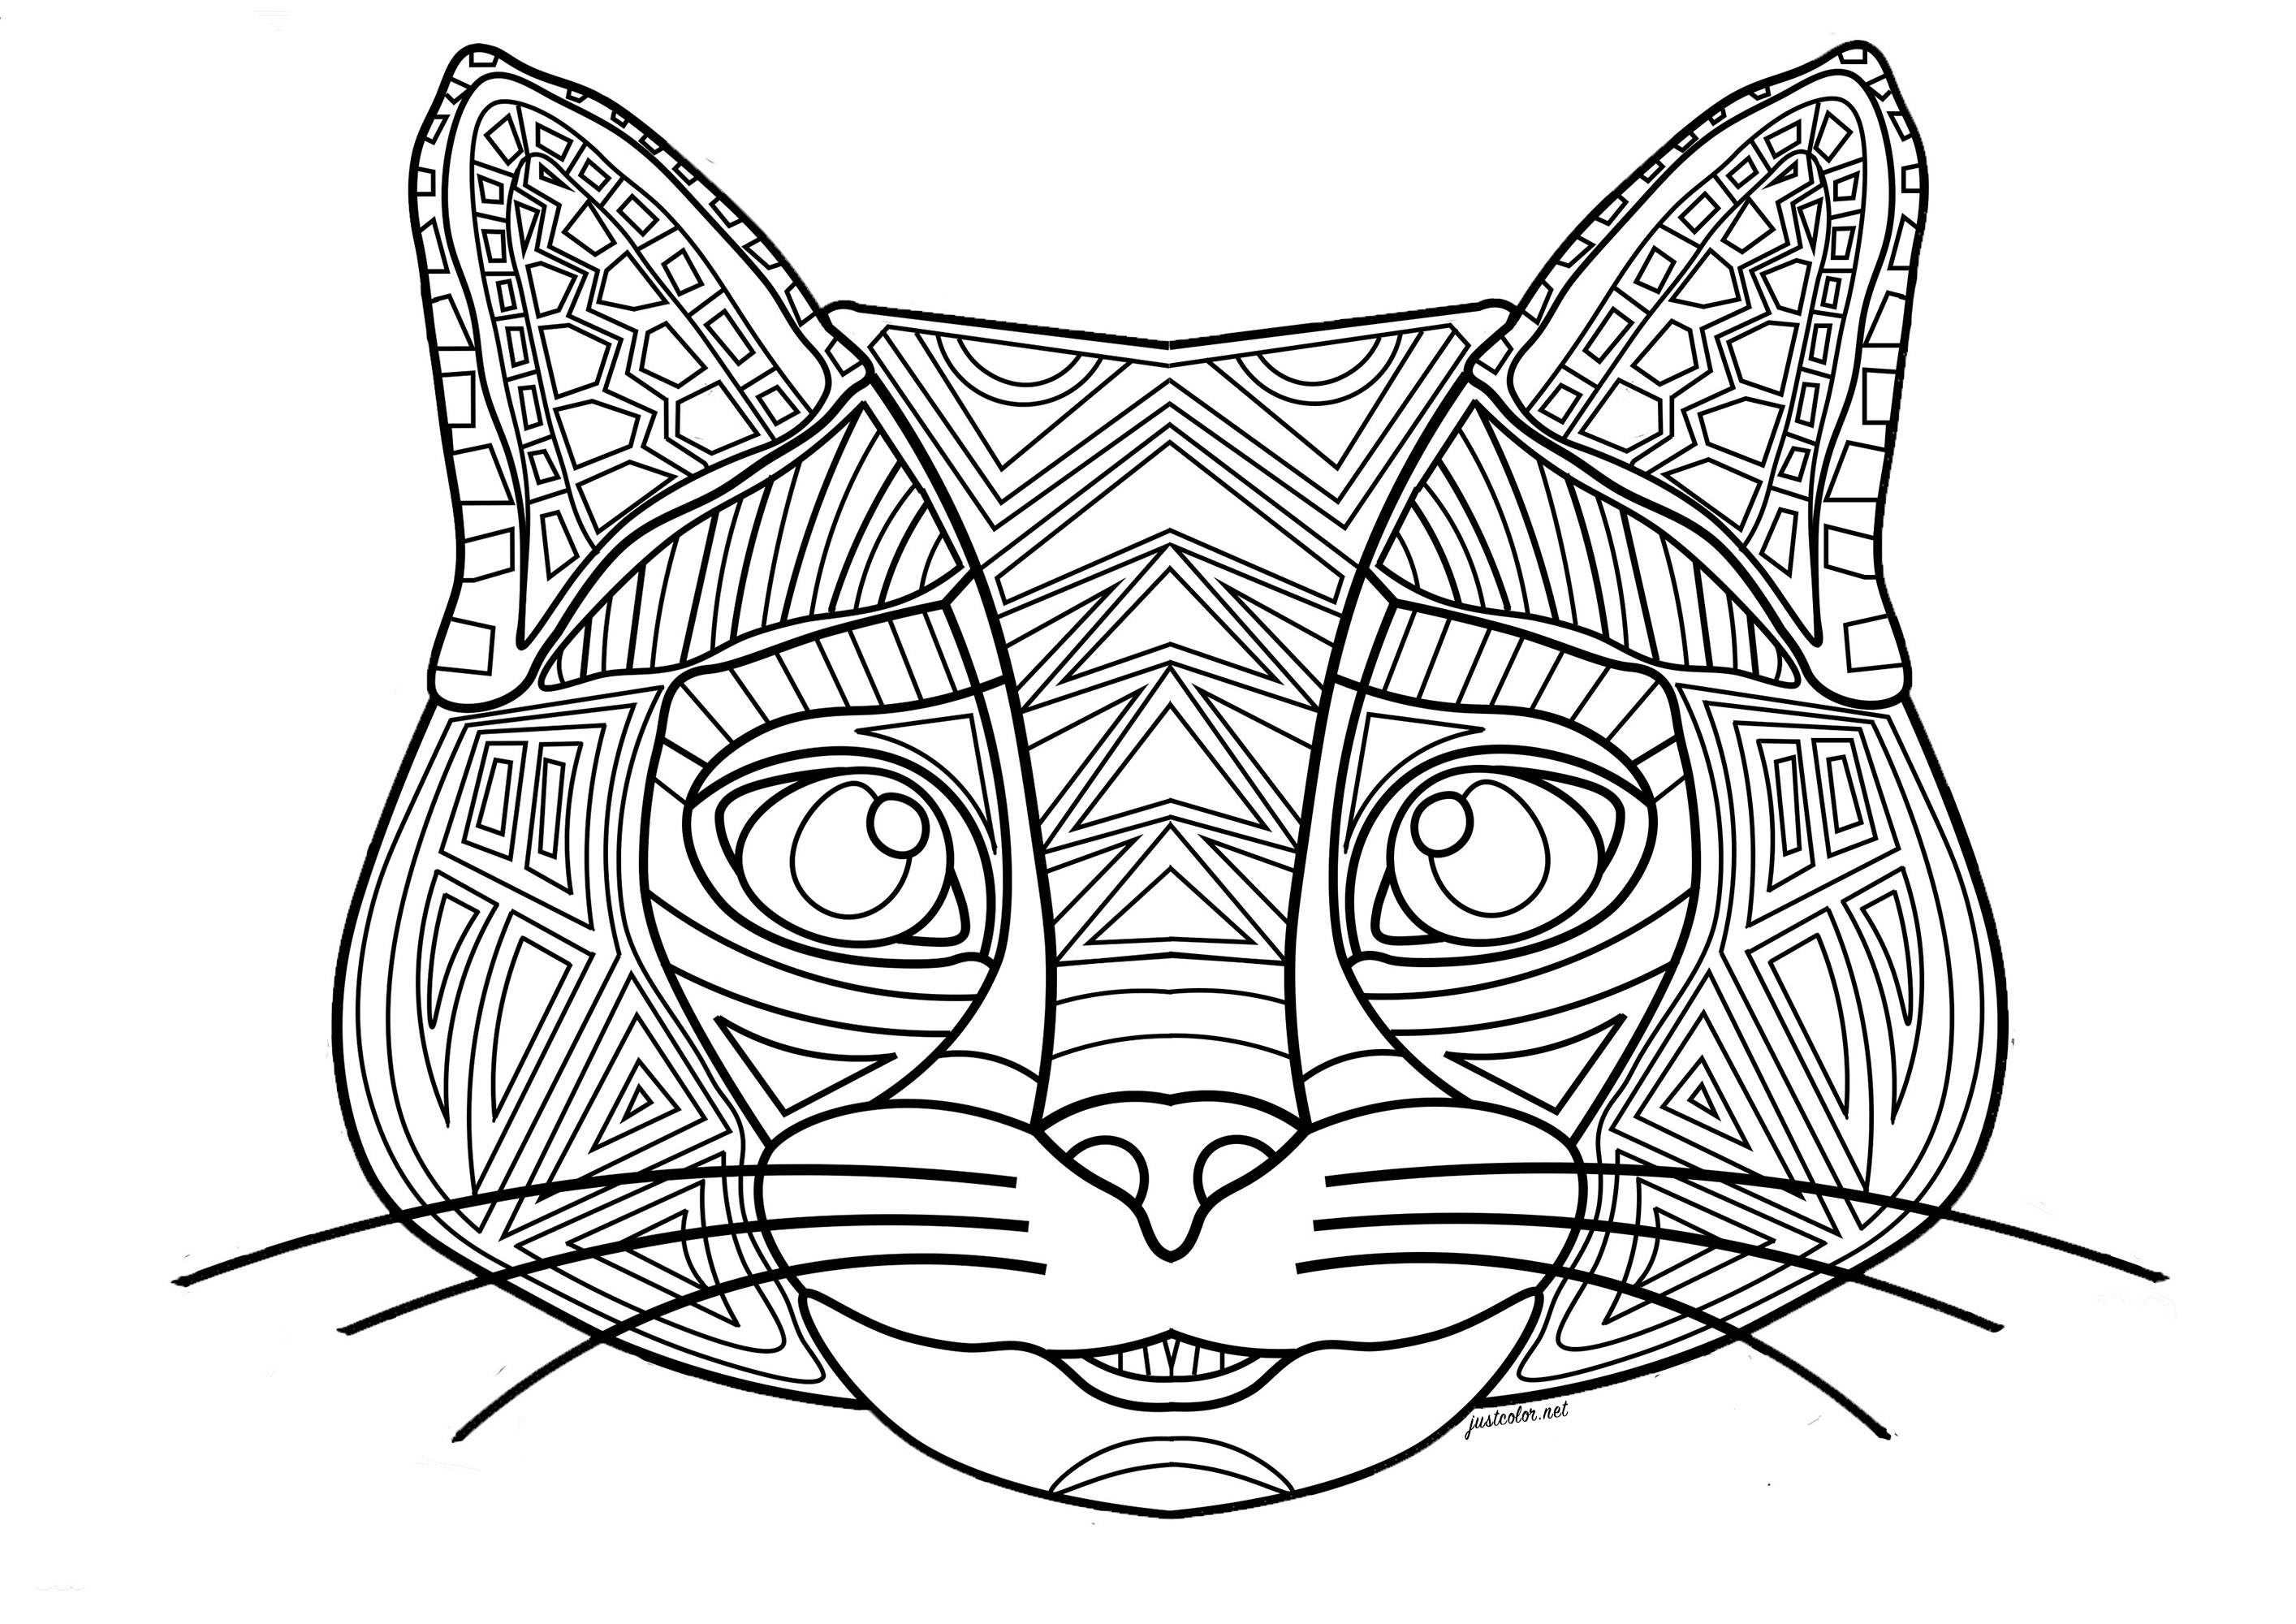 Cabeça de gato com fundo floral. A cabeça é formada por linhas regulares e formas geométricas.